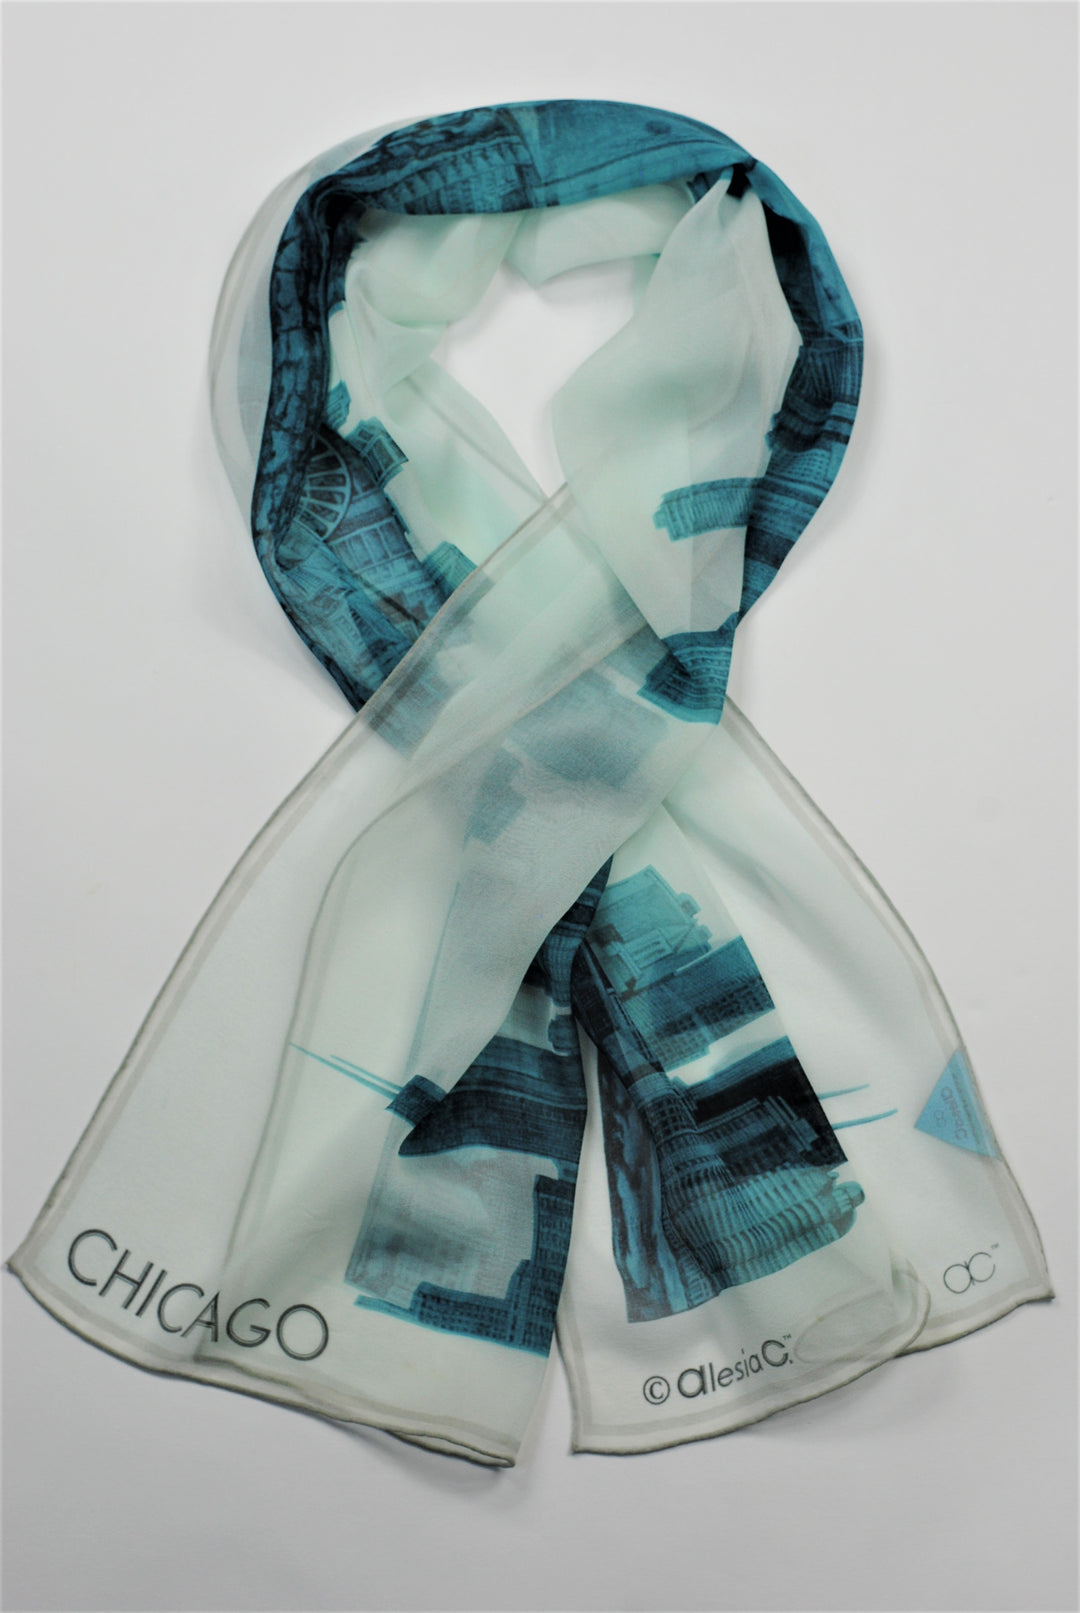 CHICAGO Skyline Art Pure Silk Georgette Scarf Blue White